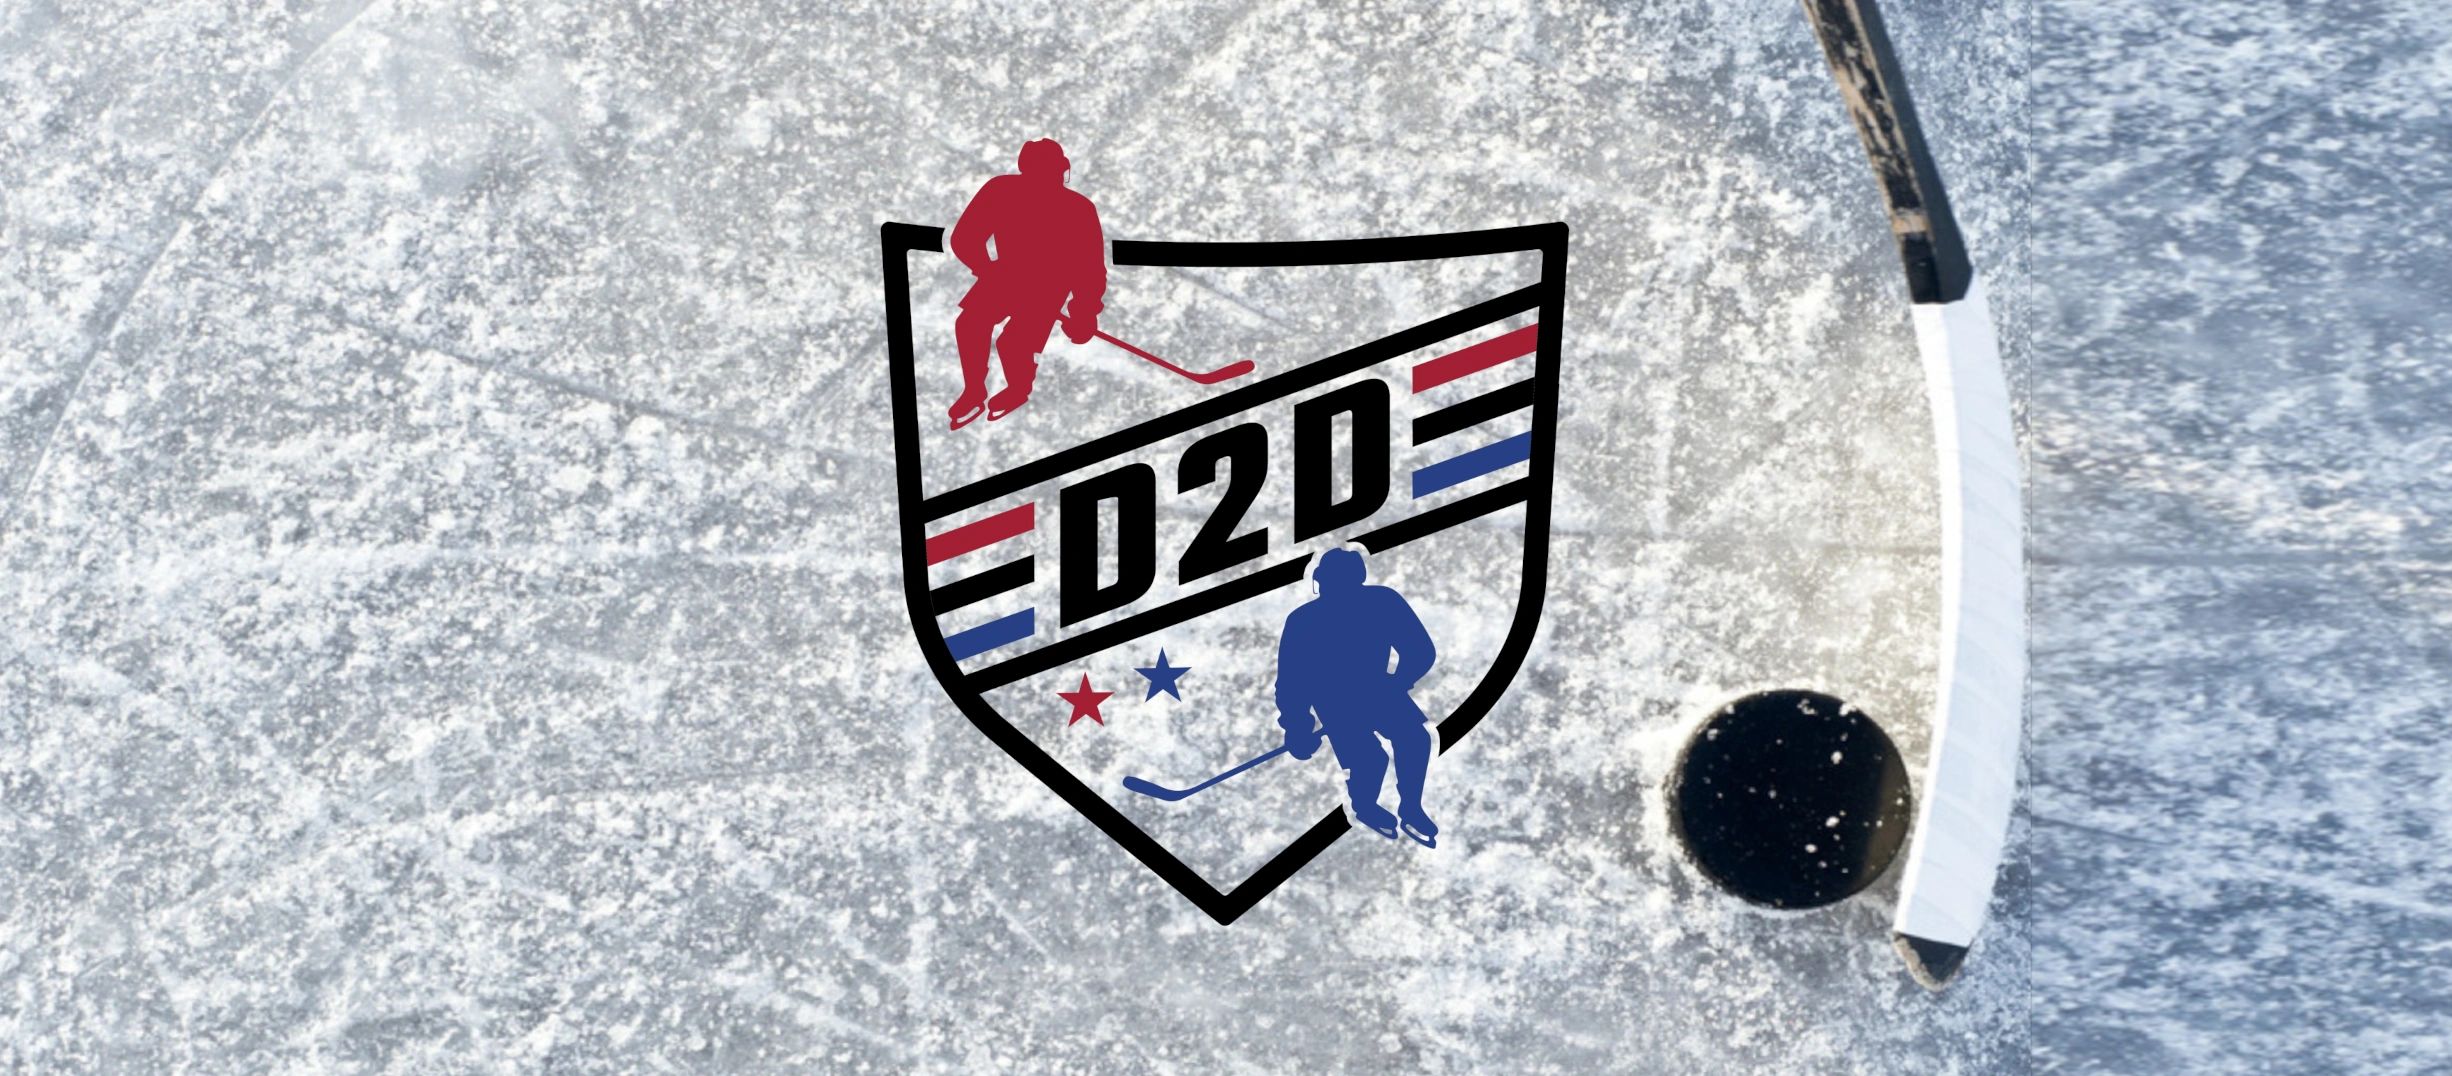 D2D | Camp pour défenseurs
D2D est l'expert au Québec pour le développement du défenseurs. 